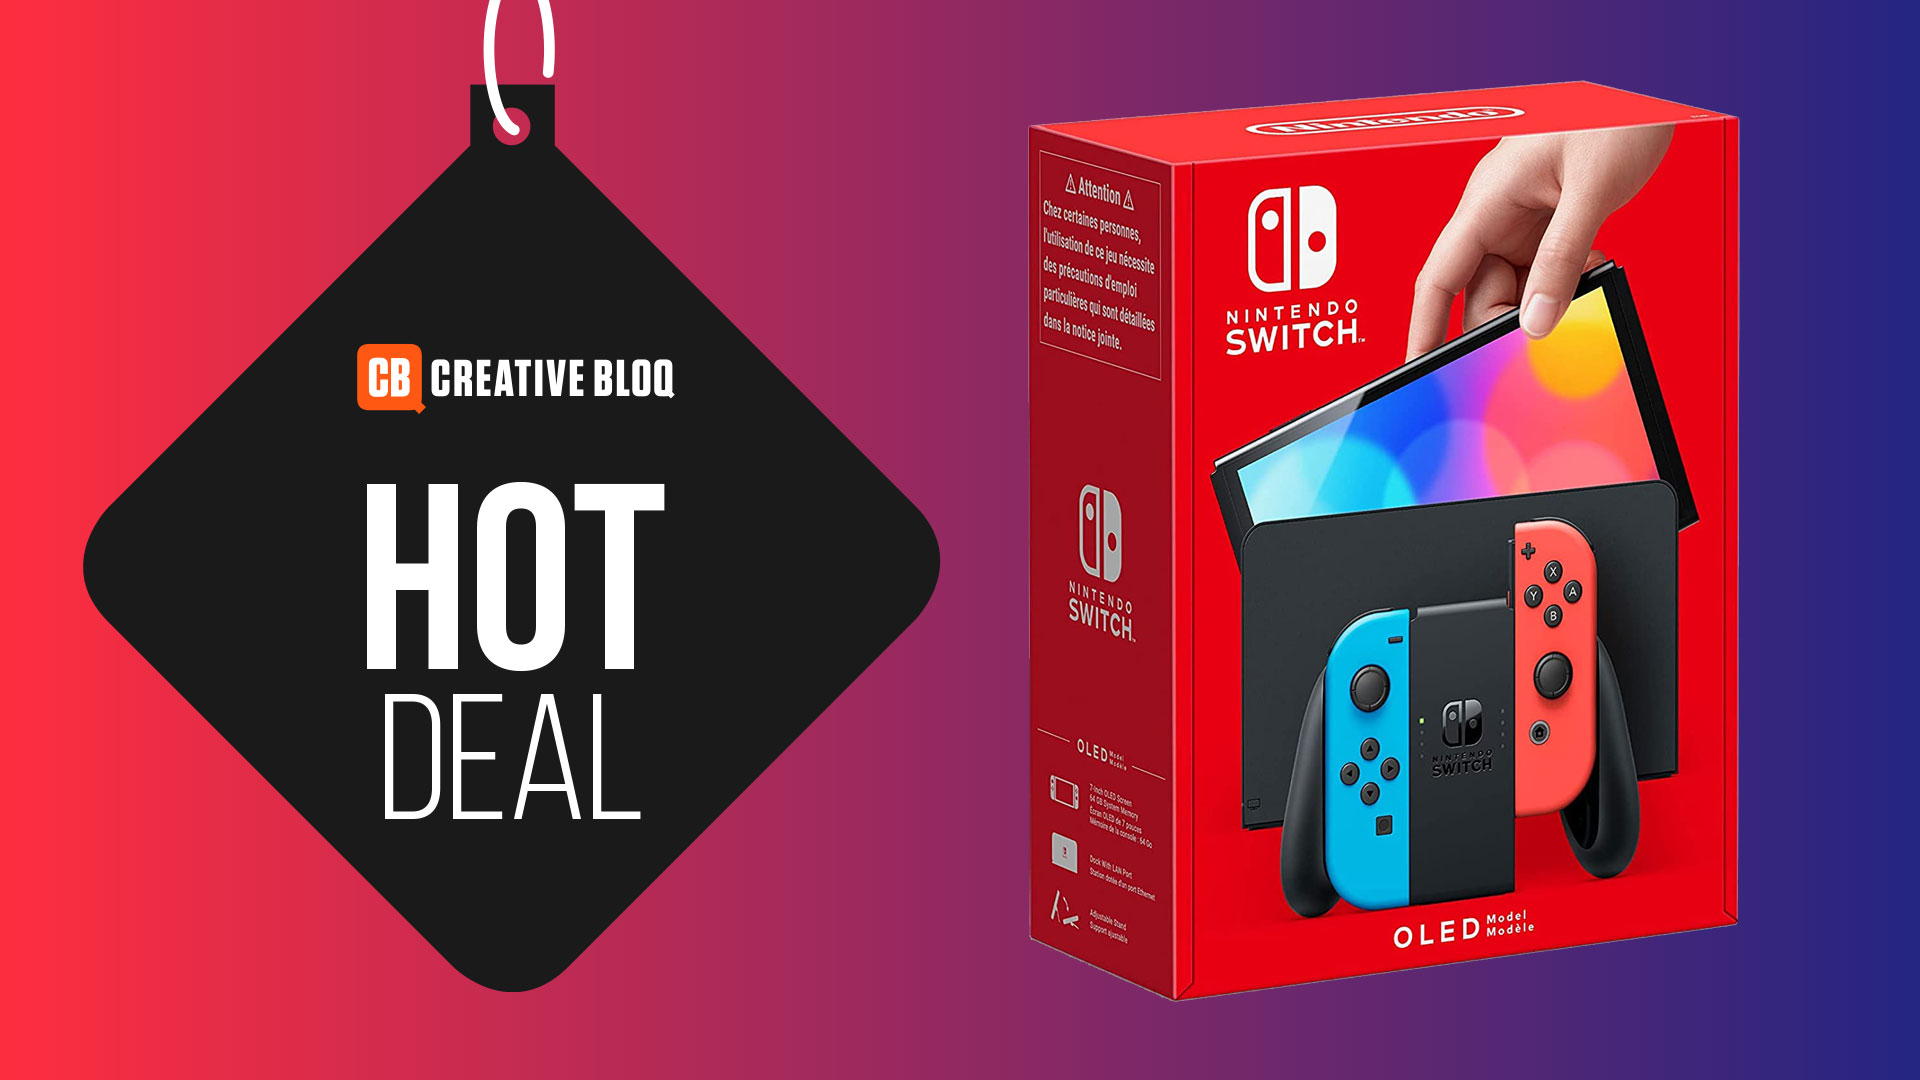 Nintendo Switch OLED product shot